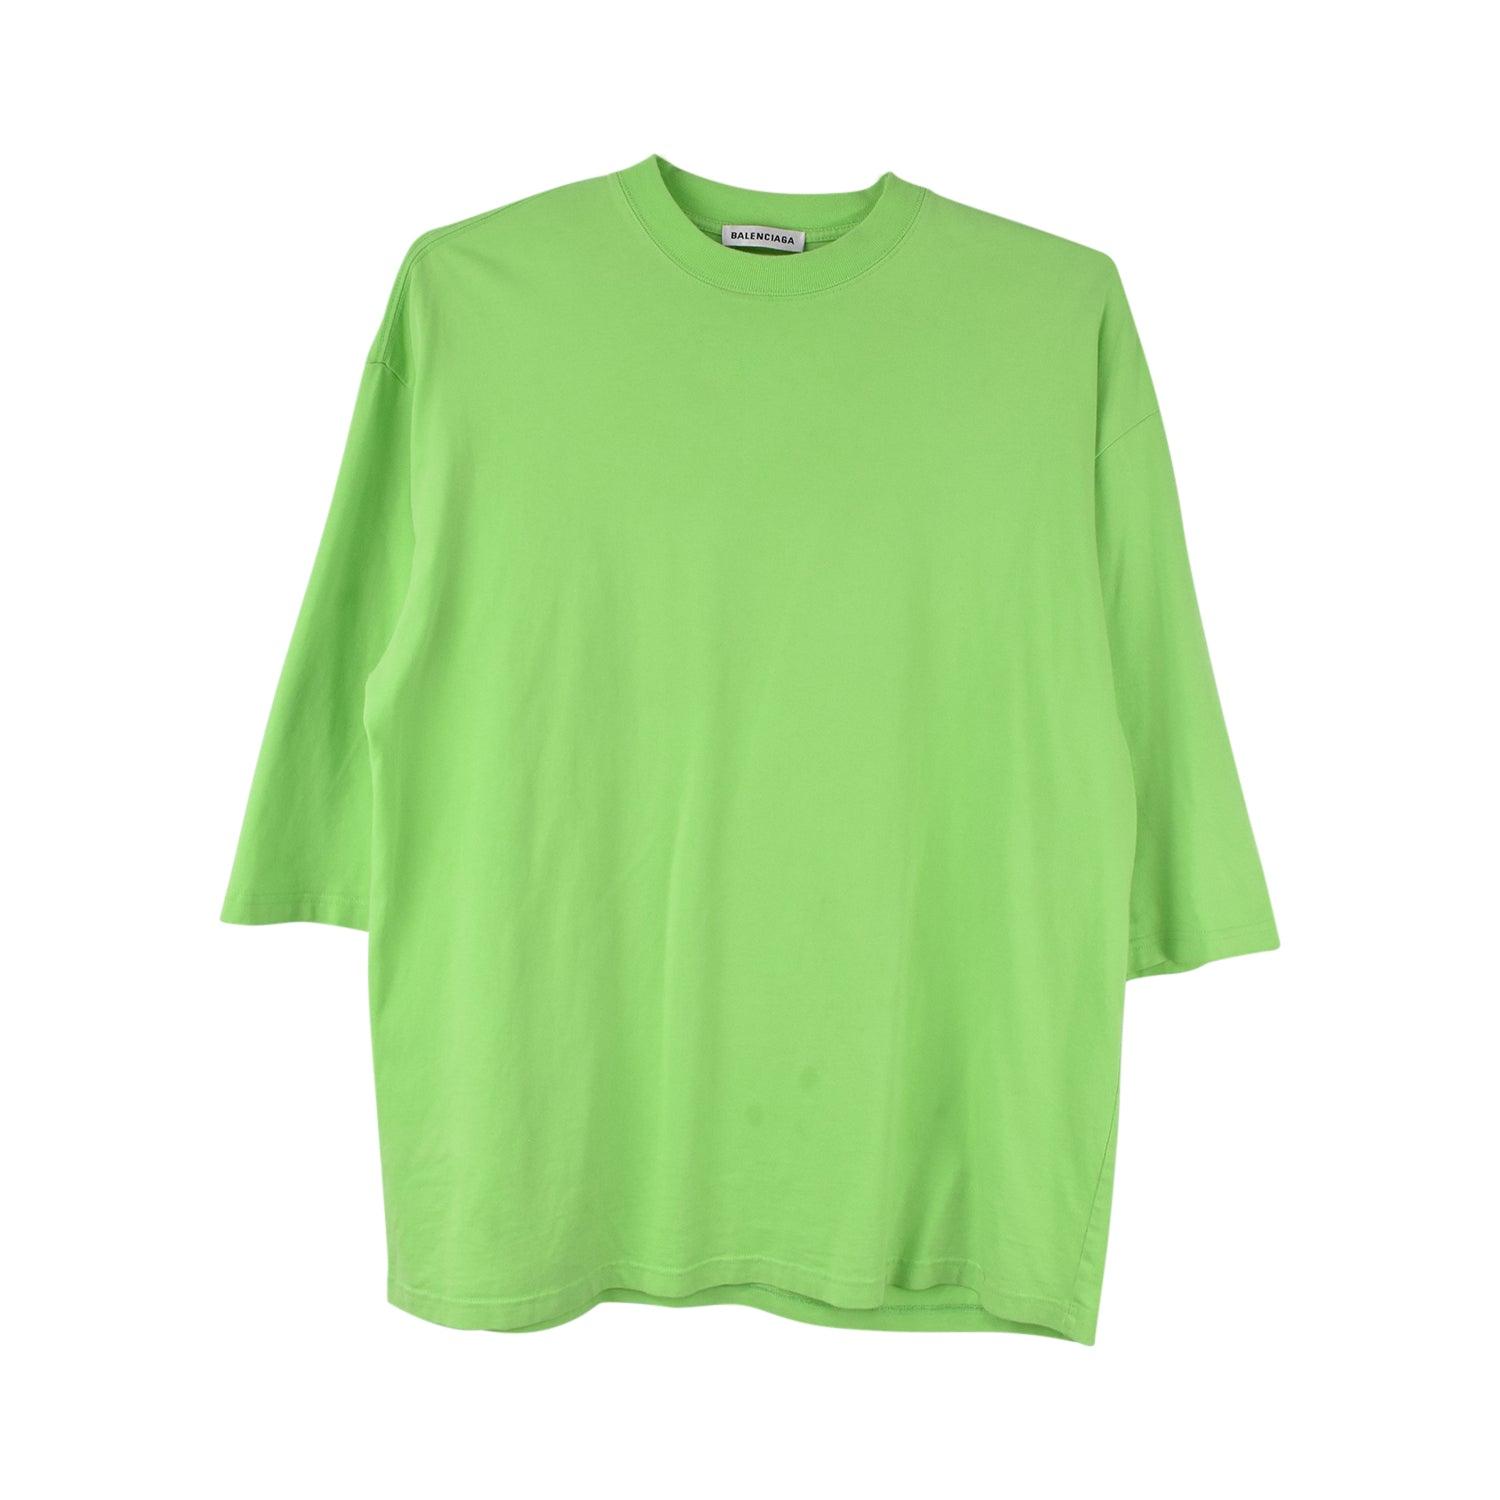 Balenciaga T-Shirt - Men's 34 - Fashionably Yours